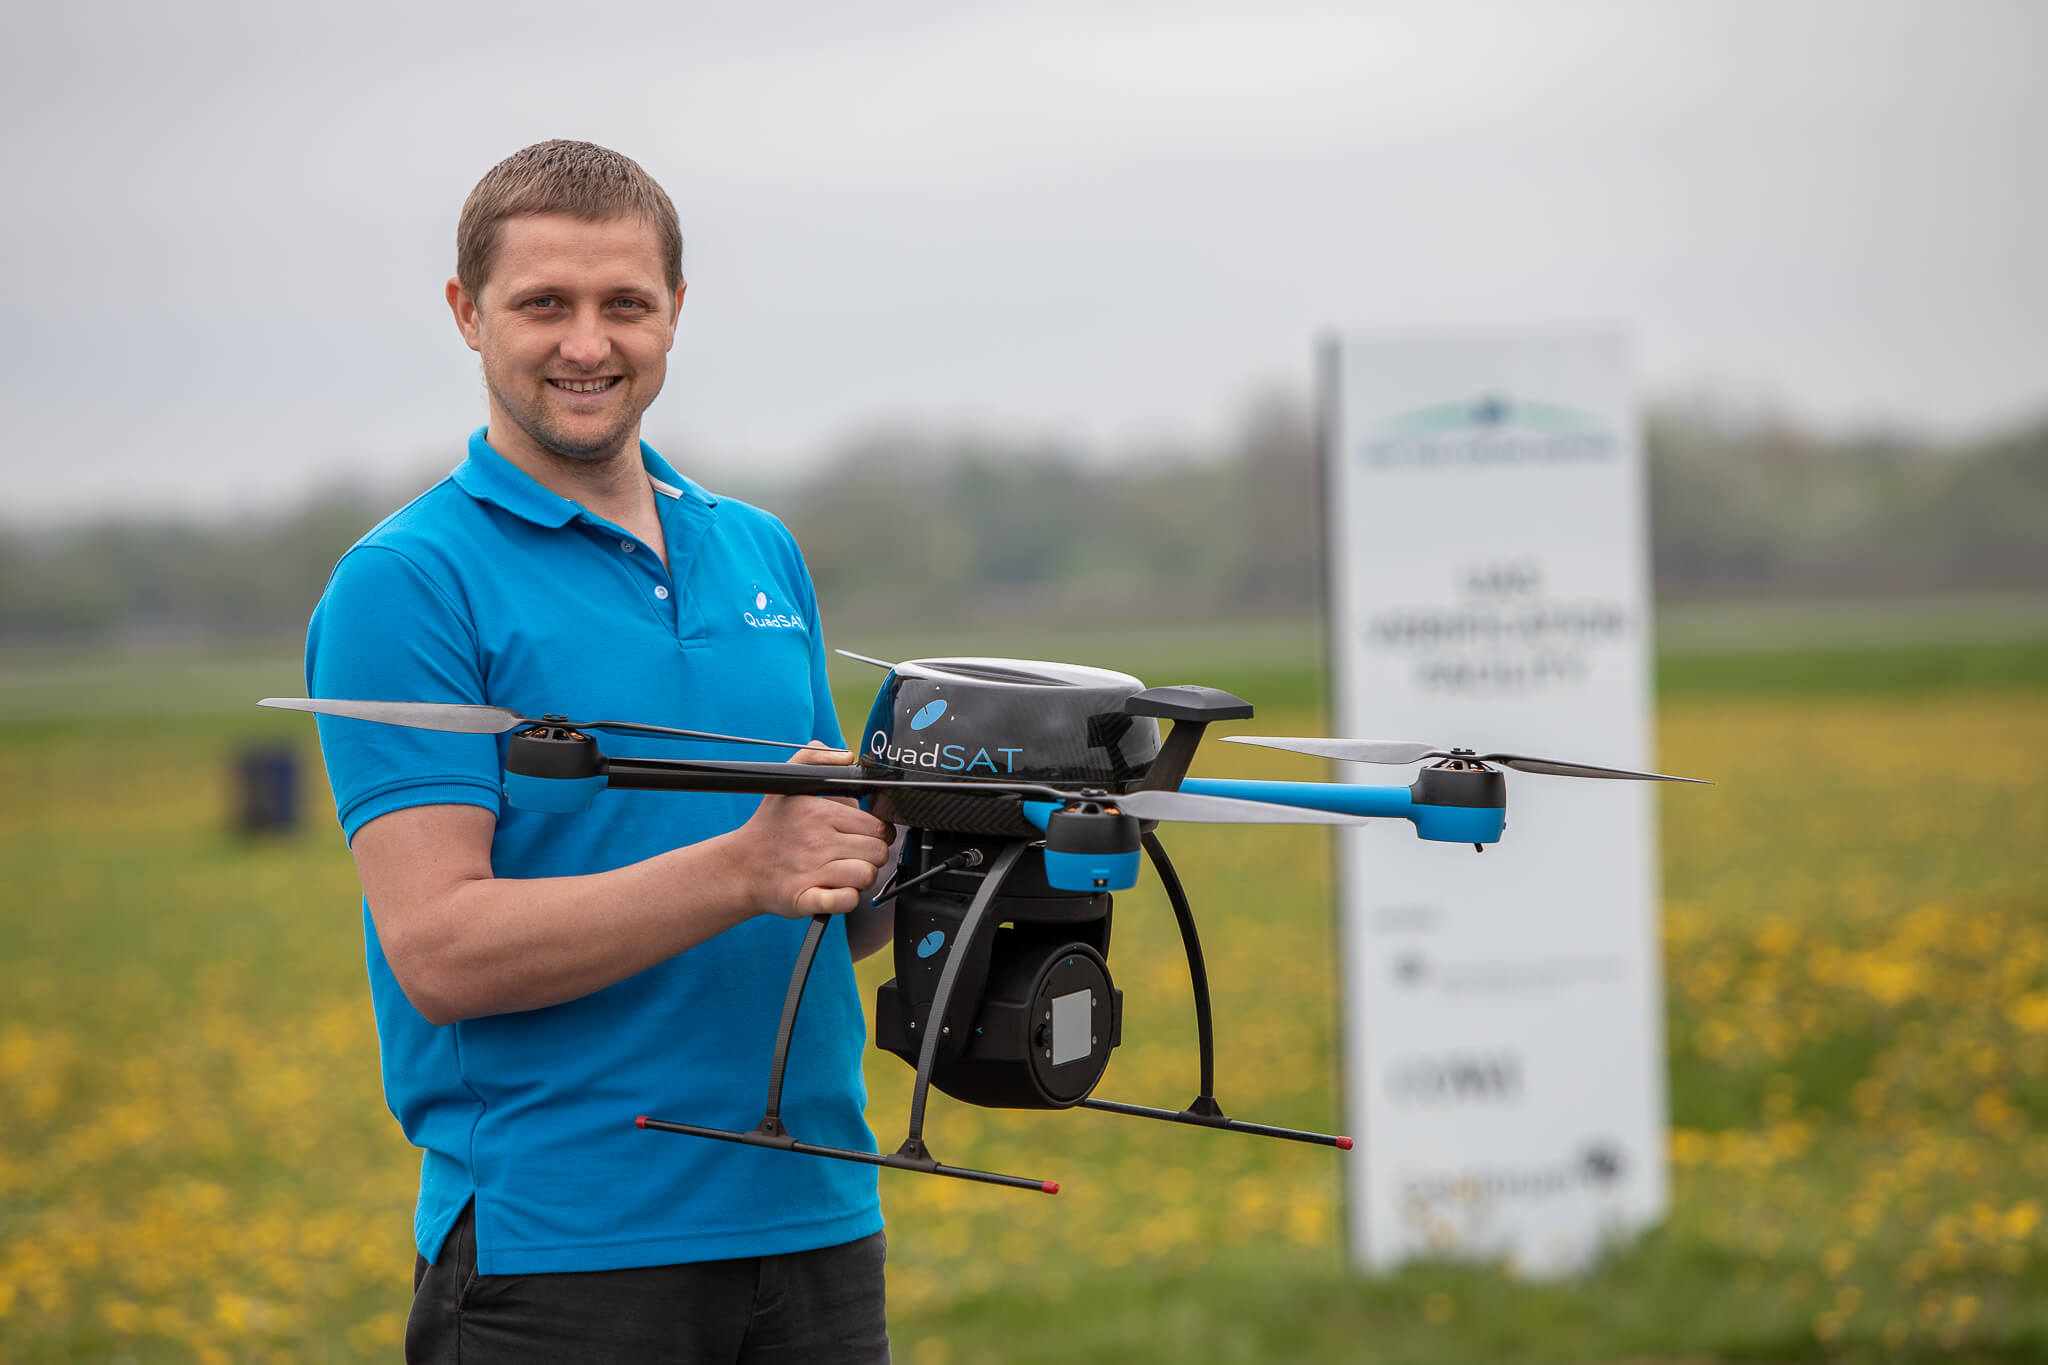 Vitalie holding drone for demonstration